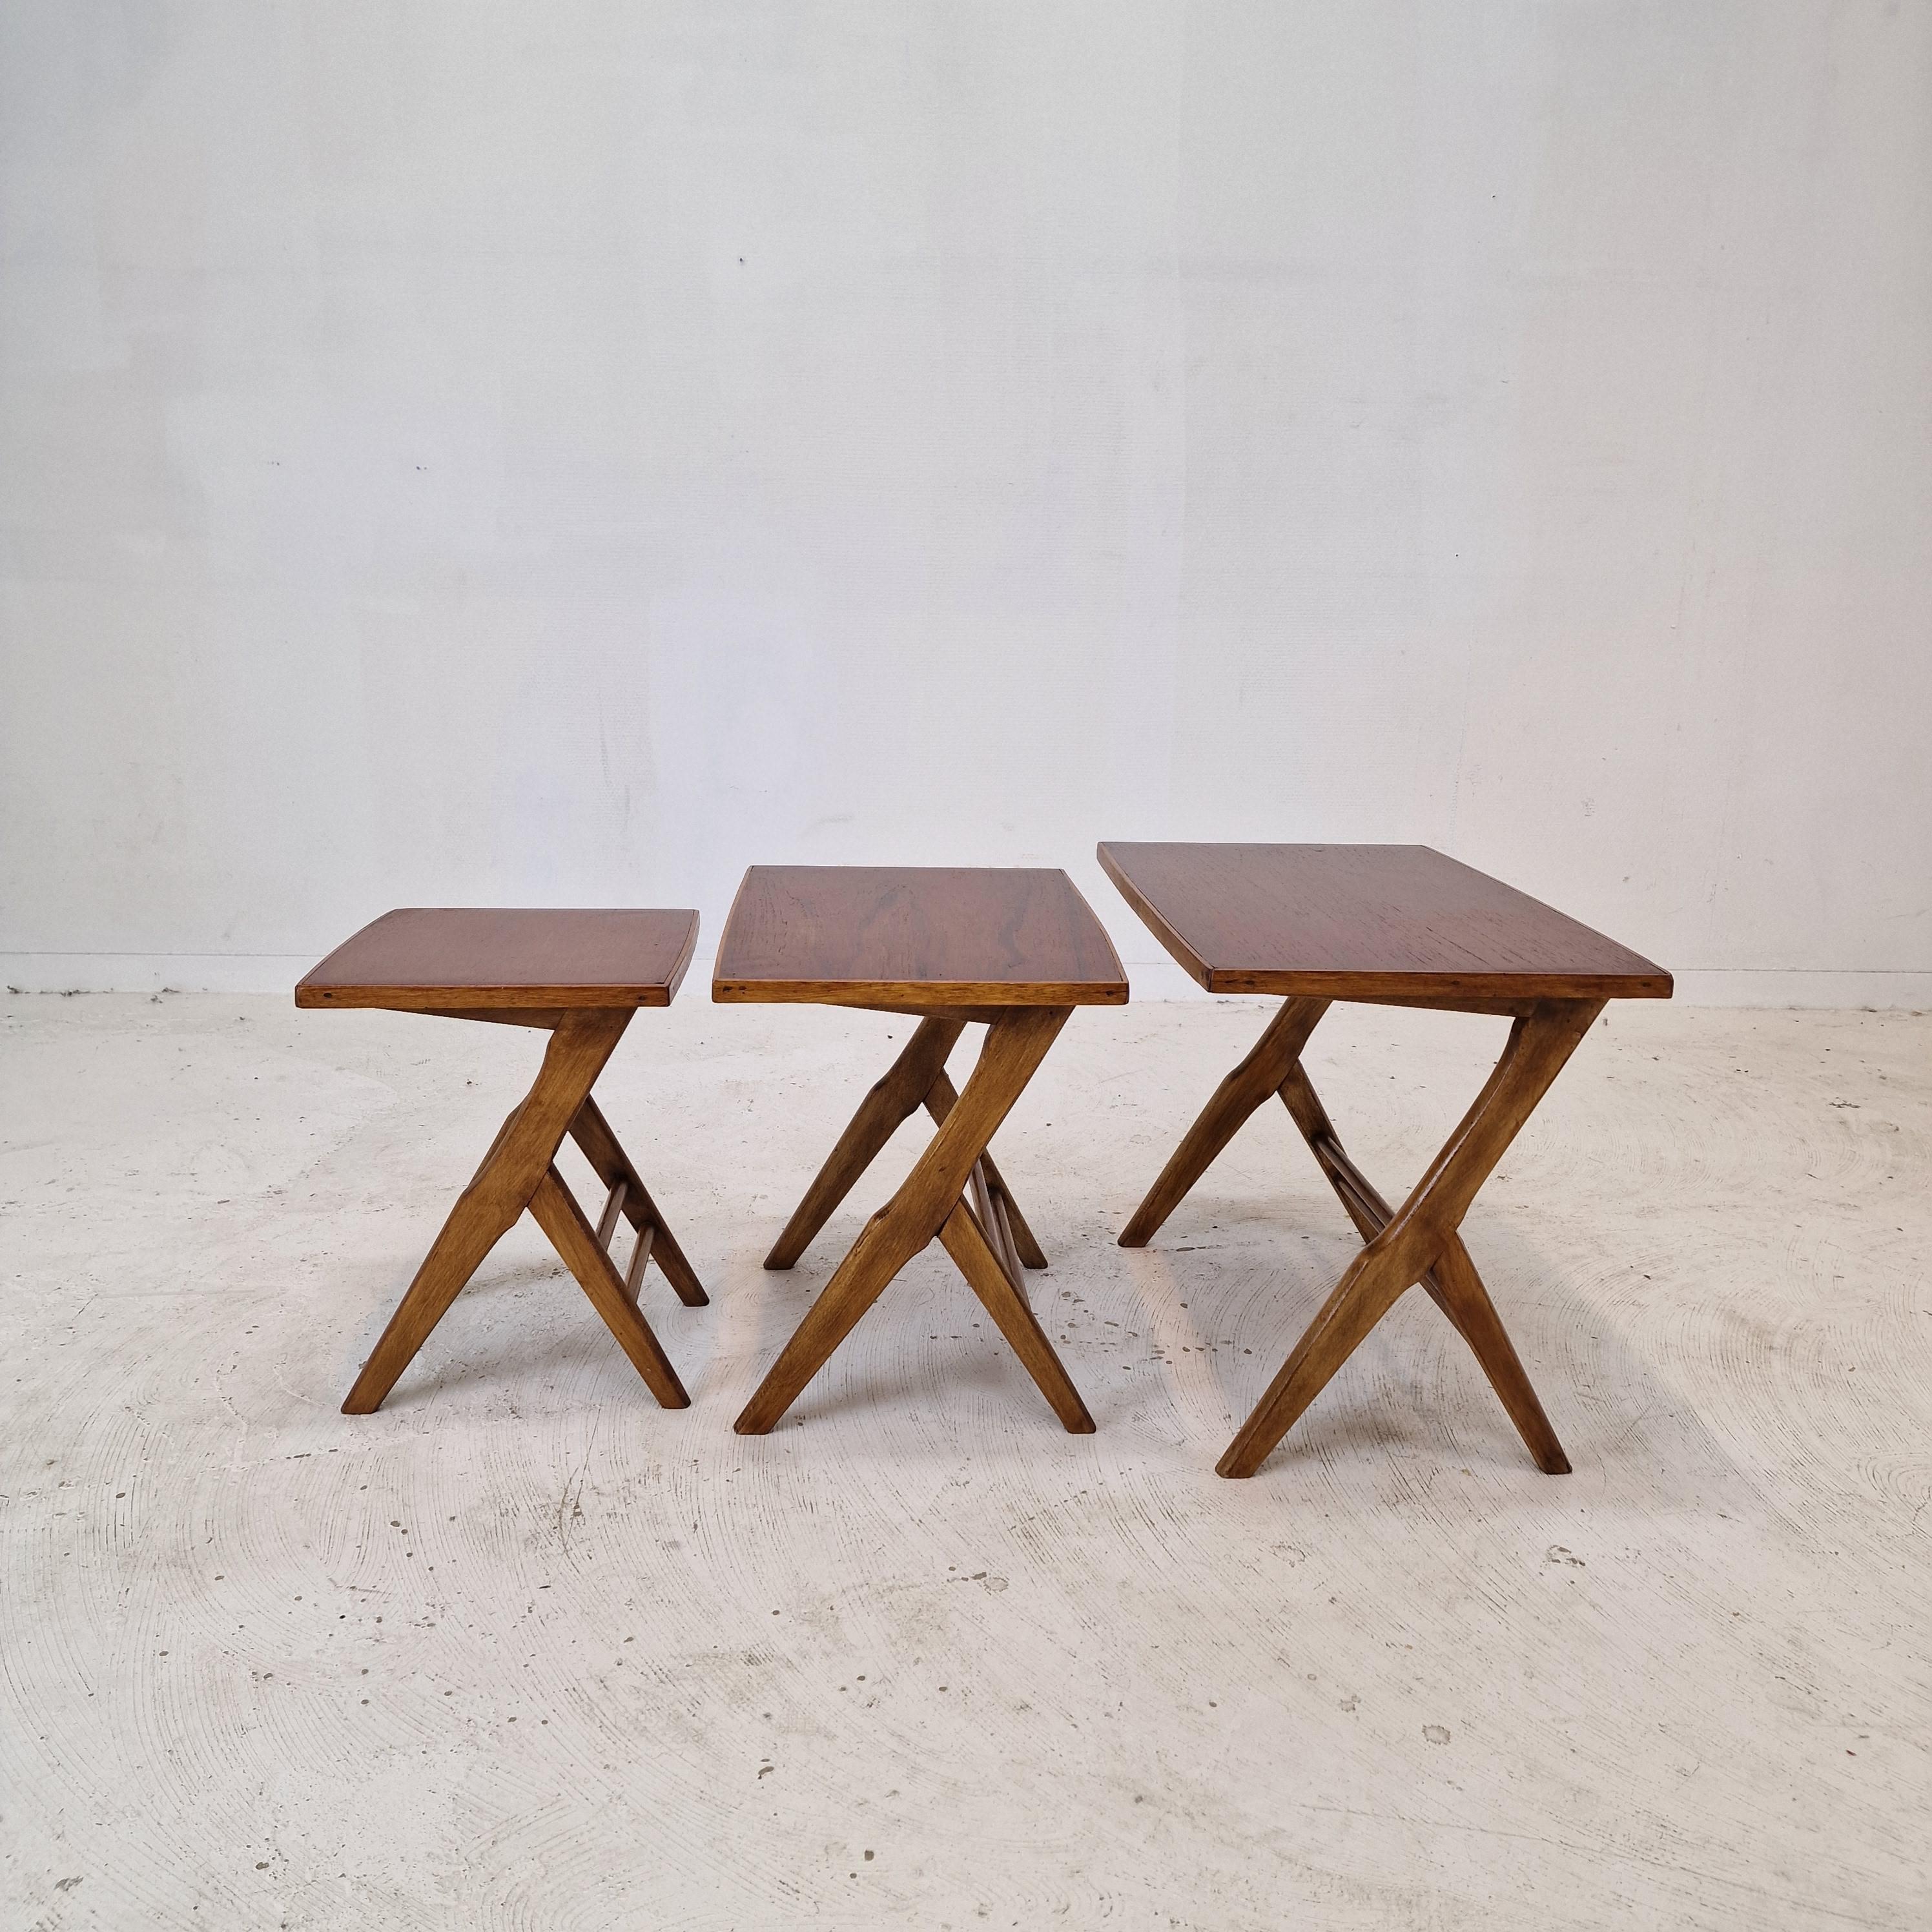 Très bel ensemble de 3 tables basses ou gigognes, années 1960.
Les tables sont toutes de taille différente afin qu'elles s'emboîtent les unes dans les autres.

Ce joli set est fabriqué à la main en bois.
Veuillez prendre note des très beaux motifs.